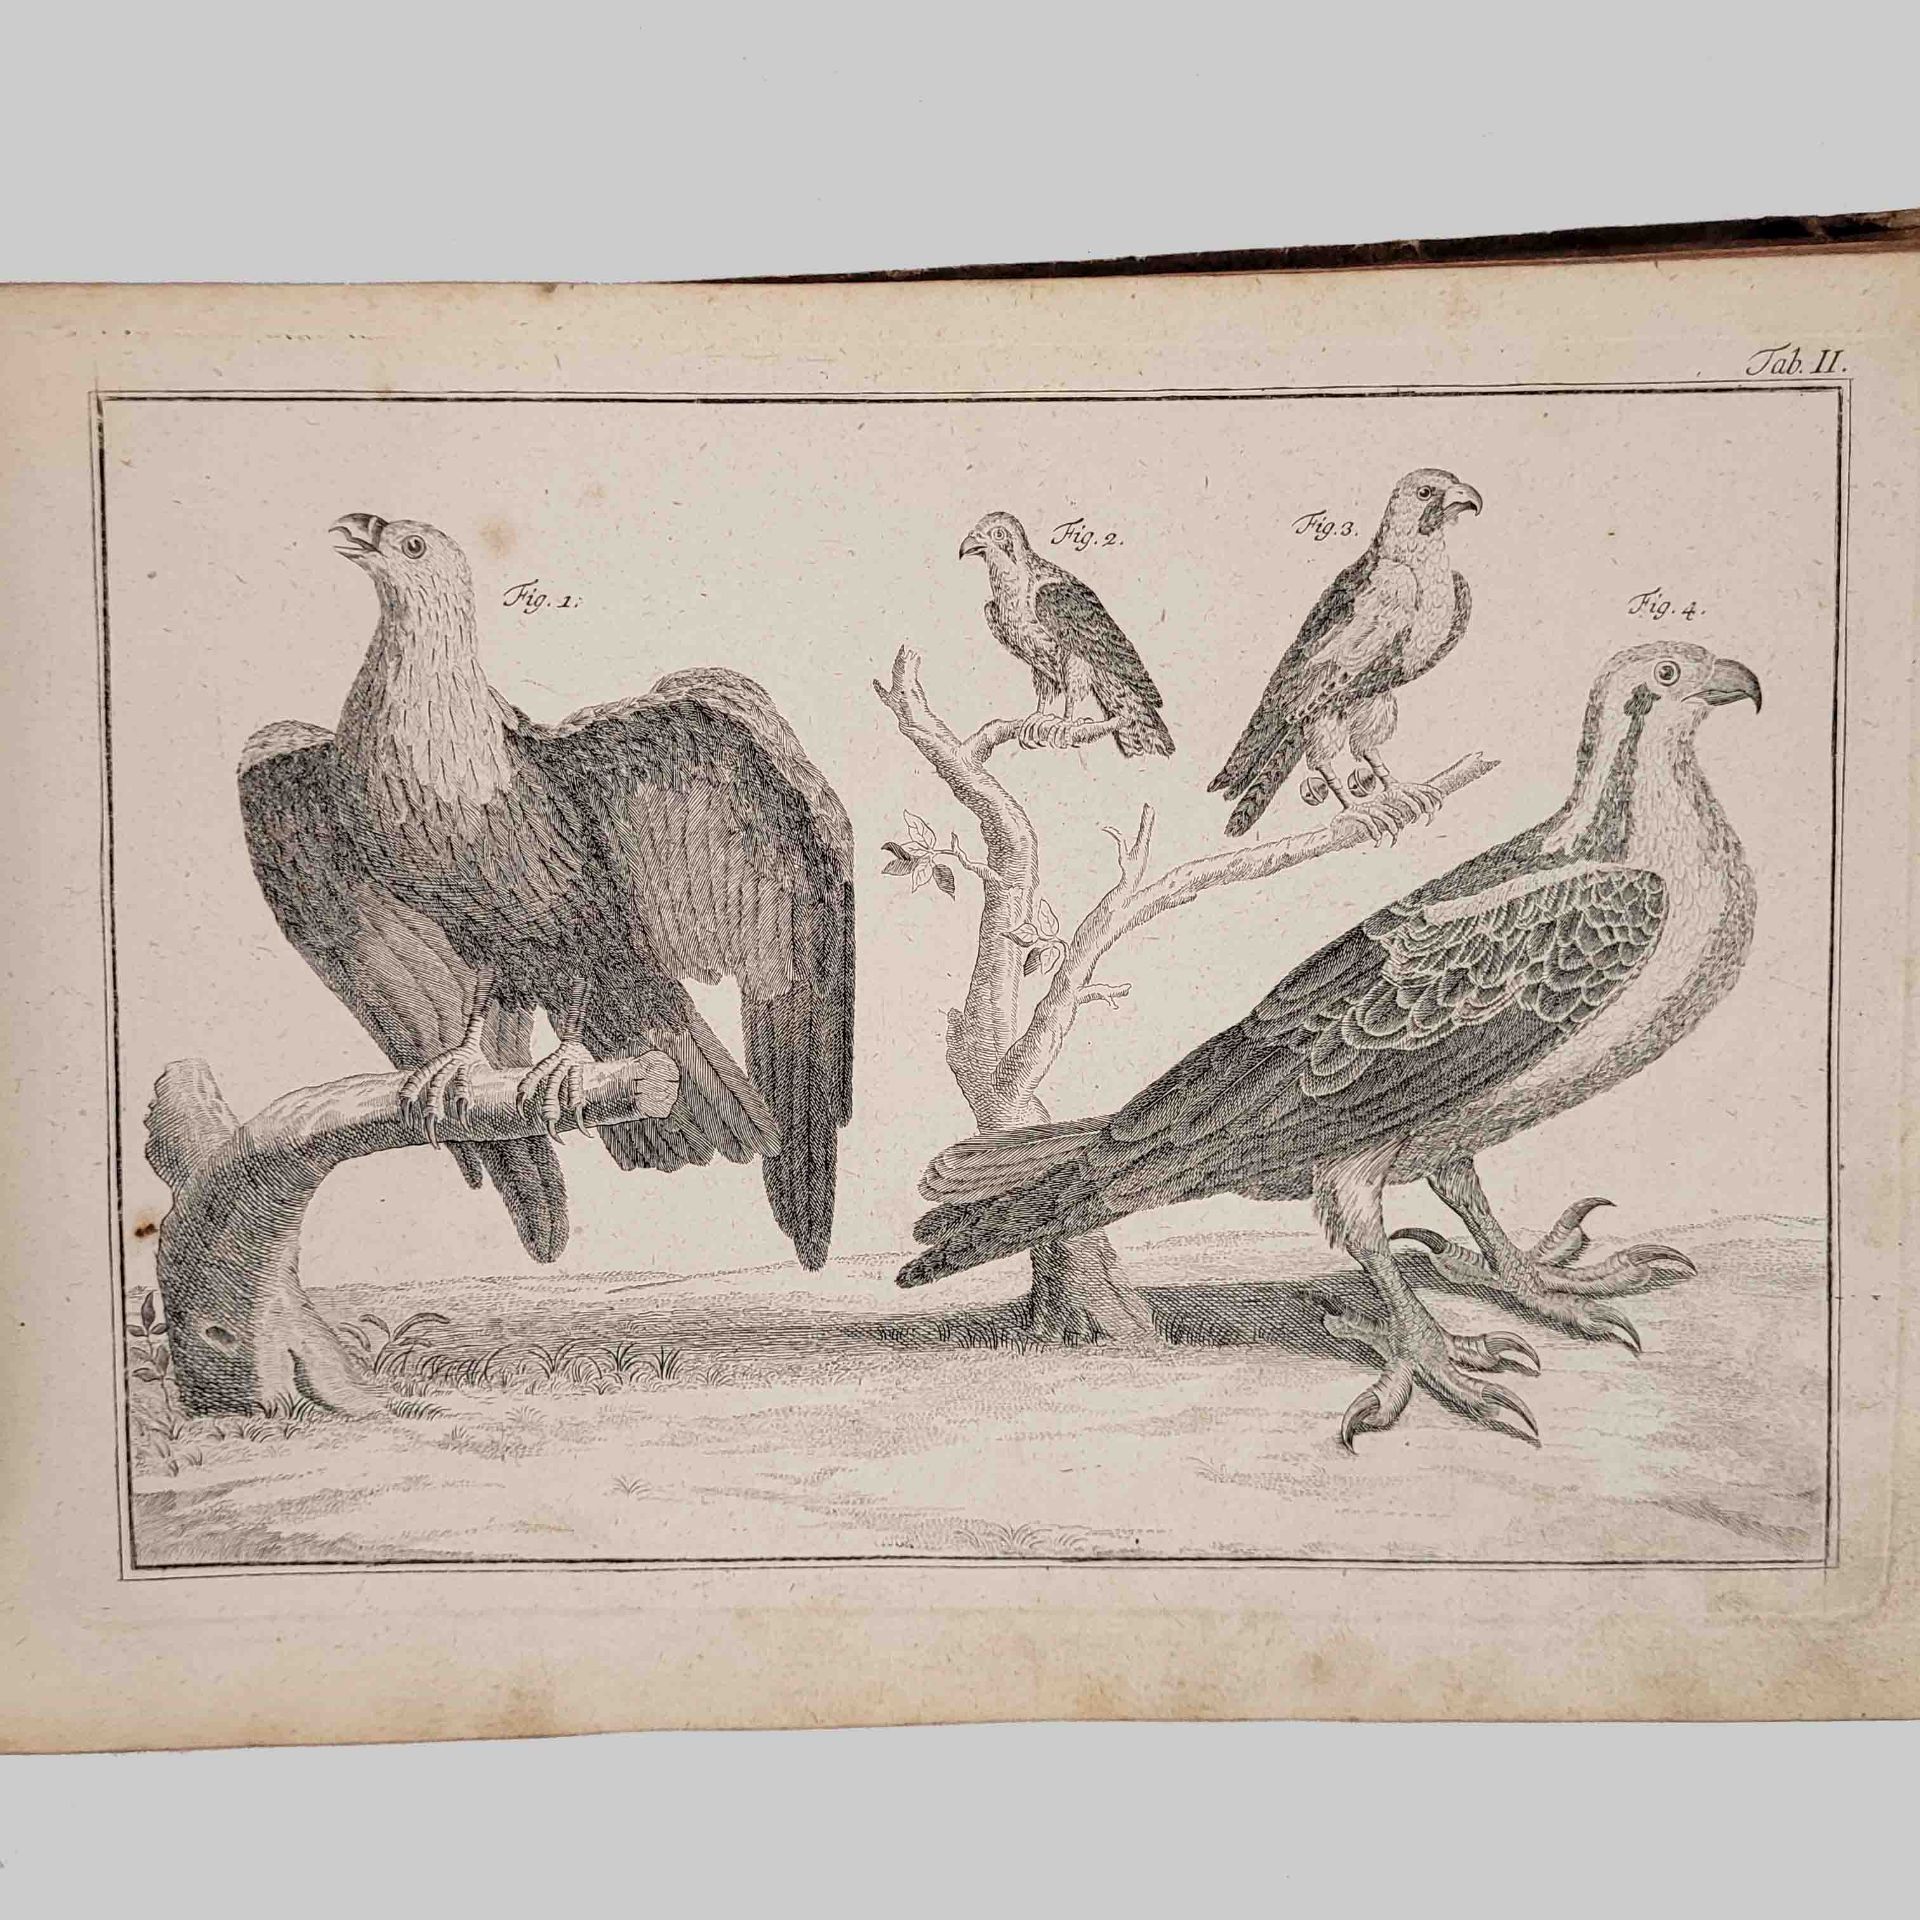 Sammelband der Abbildungen zu Linné, Natursystem - Image 3 of 5